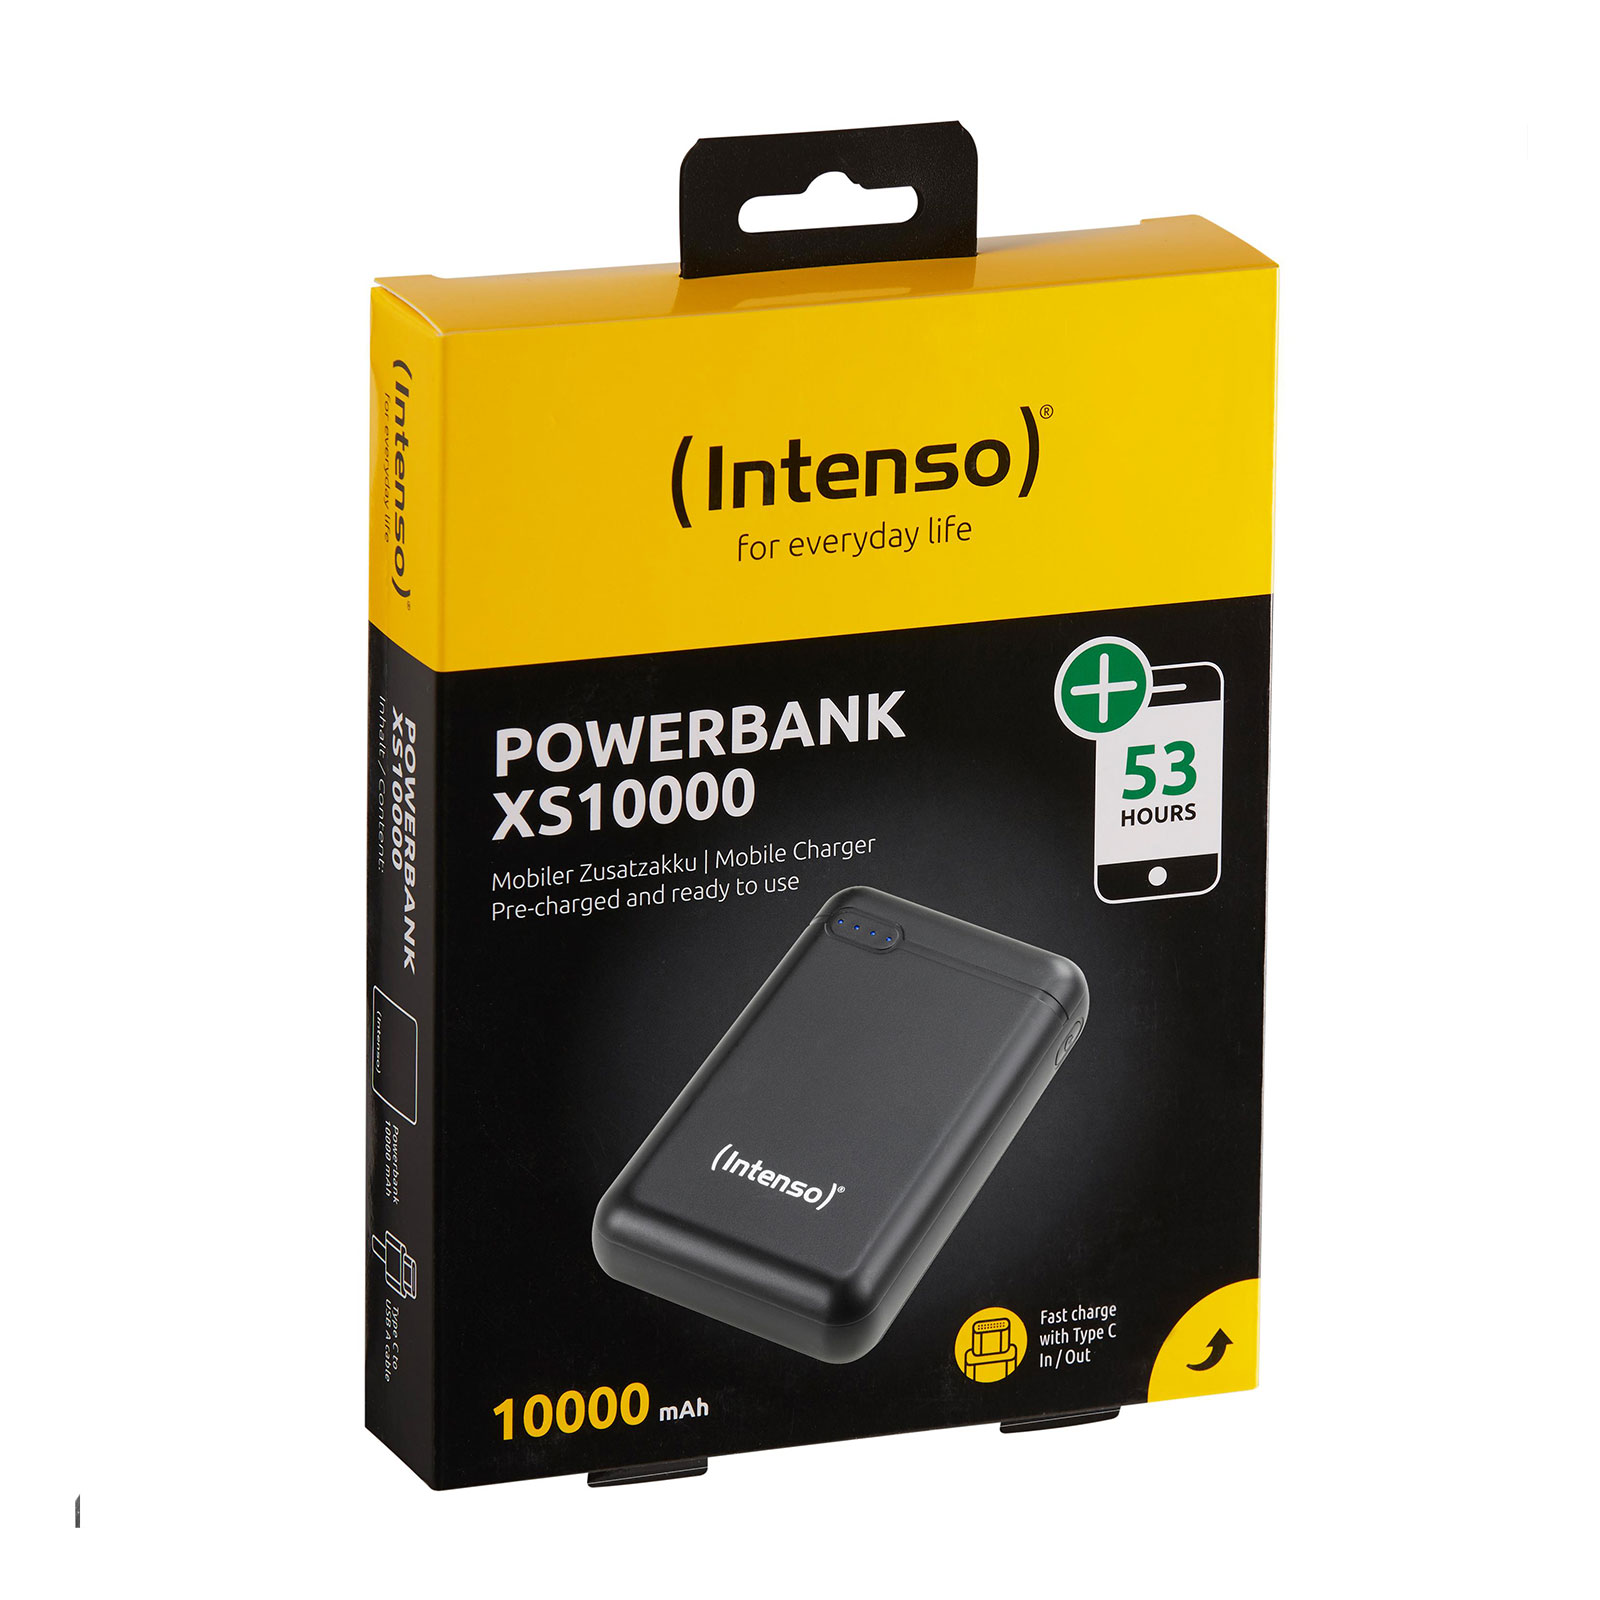 INTENSO Powerbank XS 10000